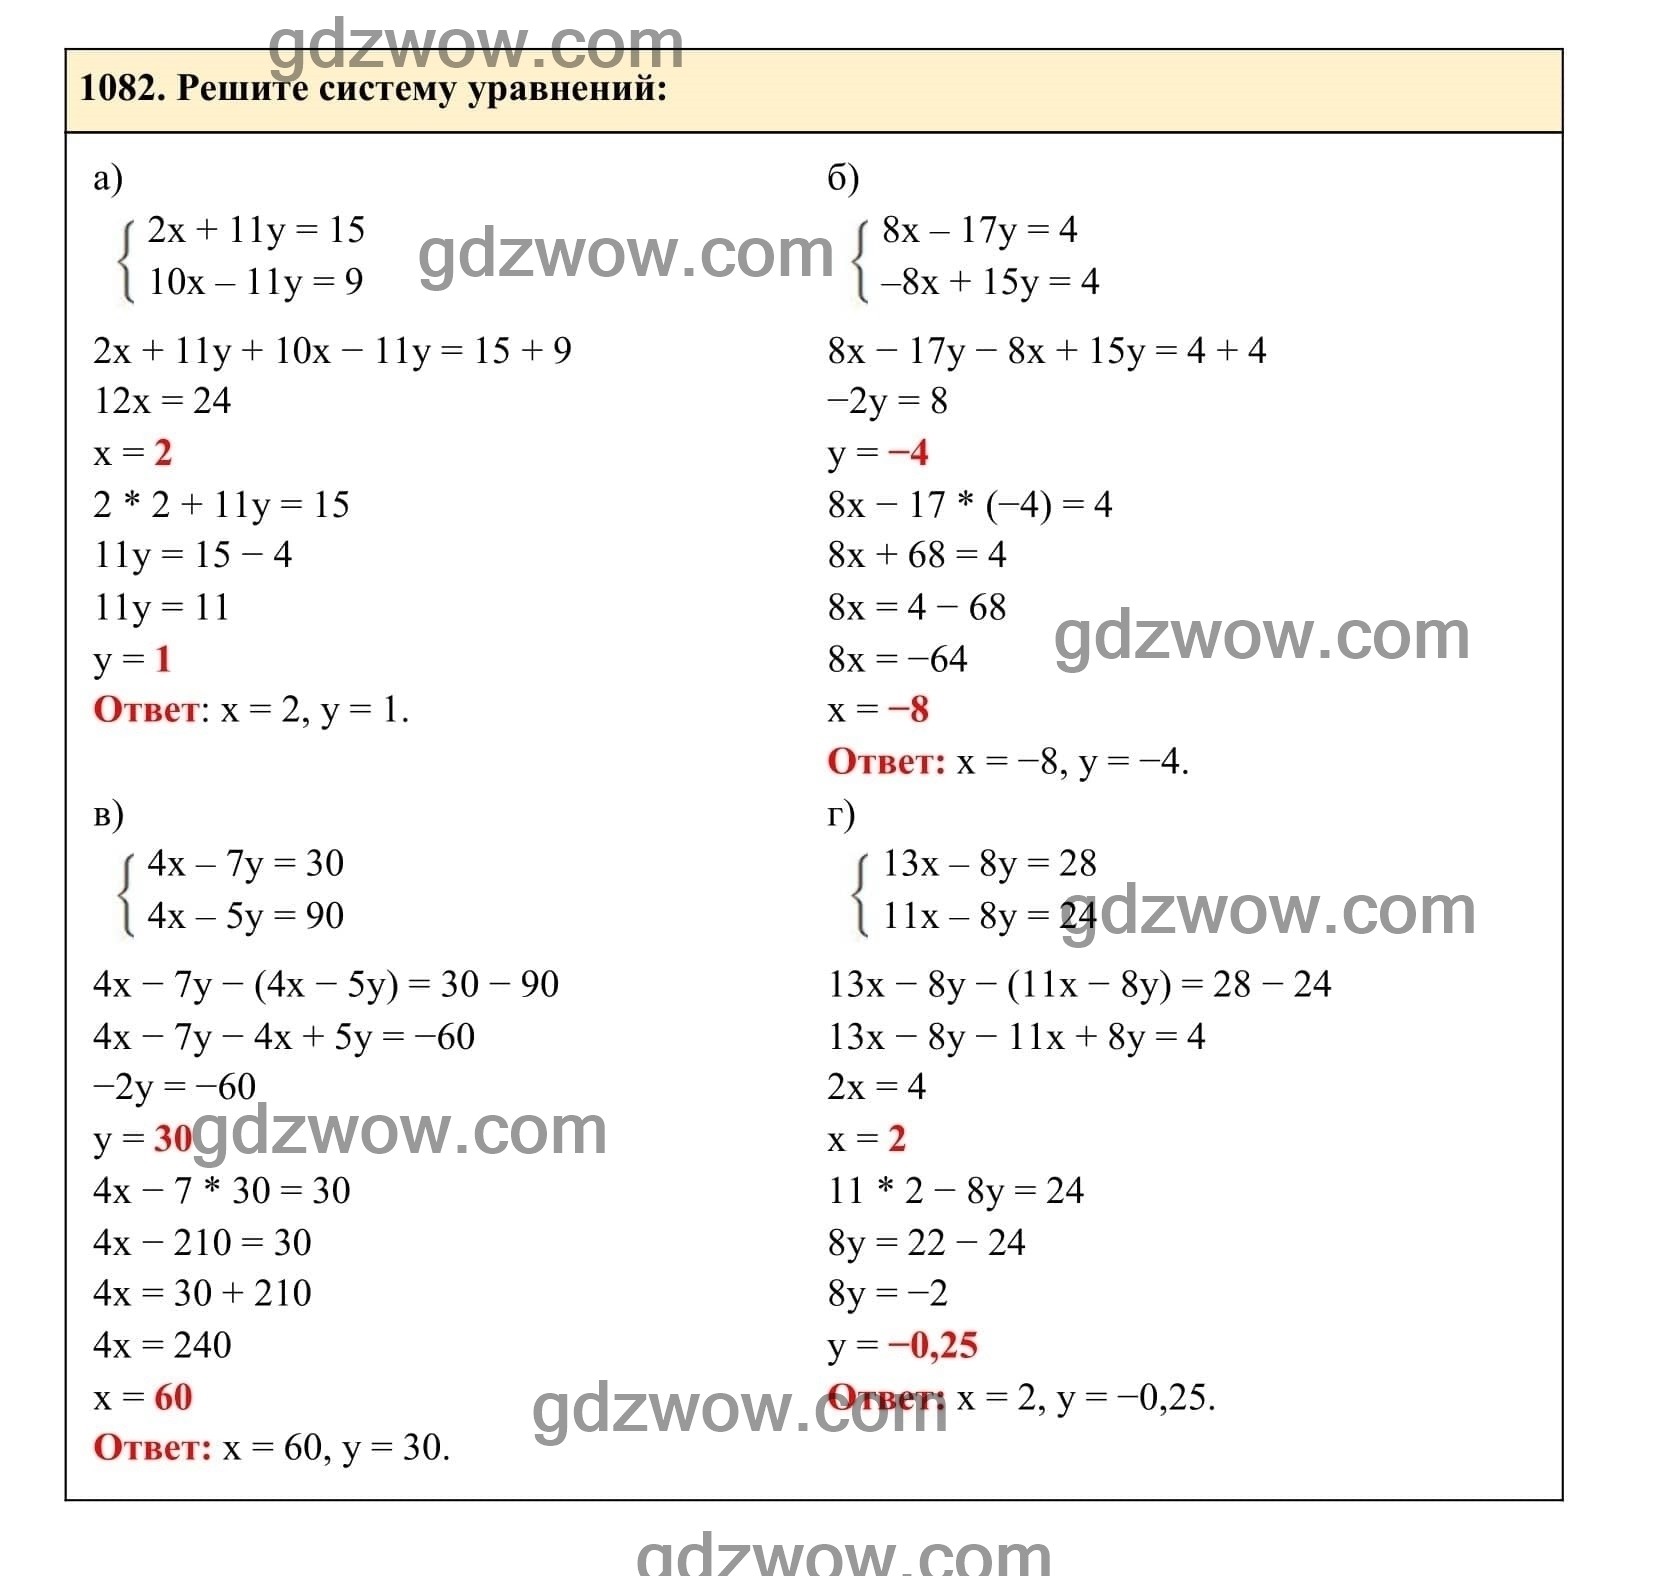 Упражнение 1082 - ГДЗ по Алгебре 7 класс Учебник Макарычев (решебник) - GDZwow